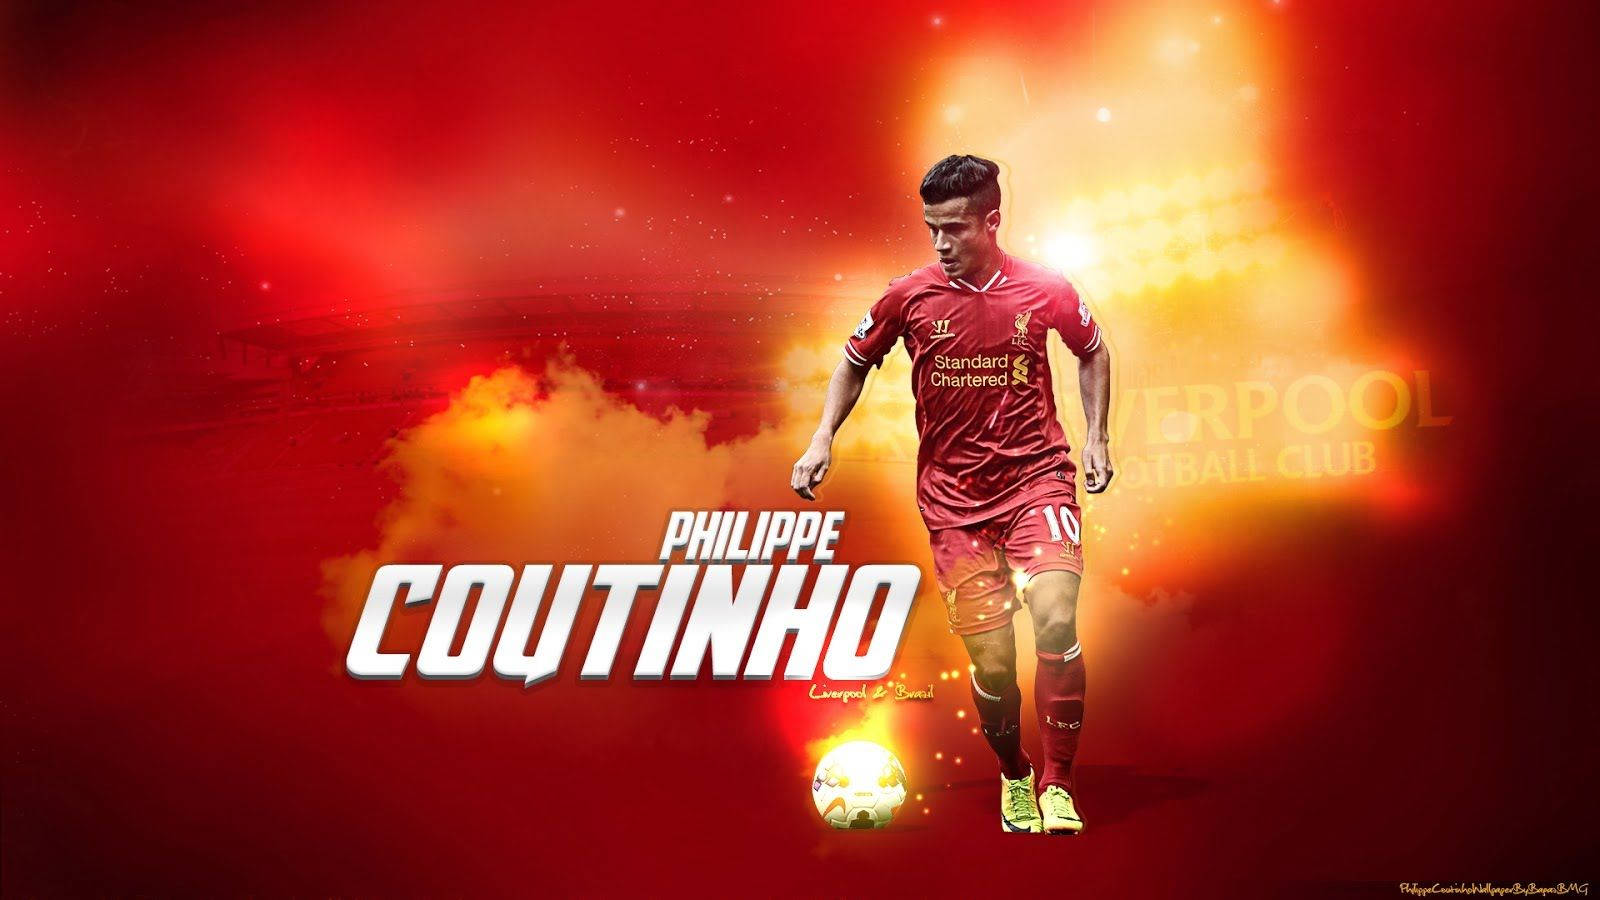 Philippe Coutinho fra Liverpool FC poserer mod farverige vægge. Wallpaper